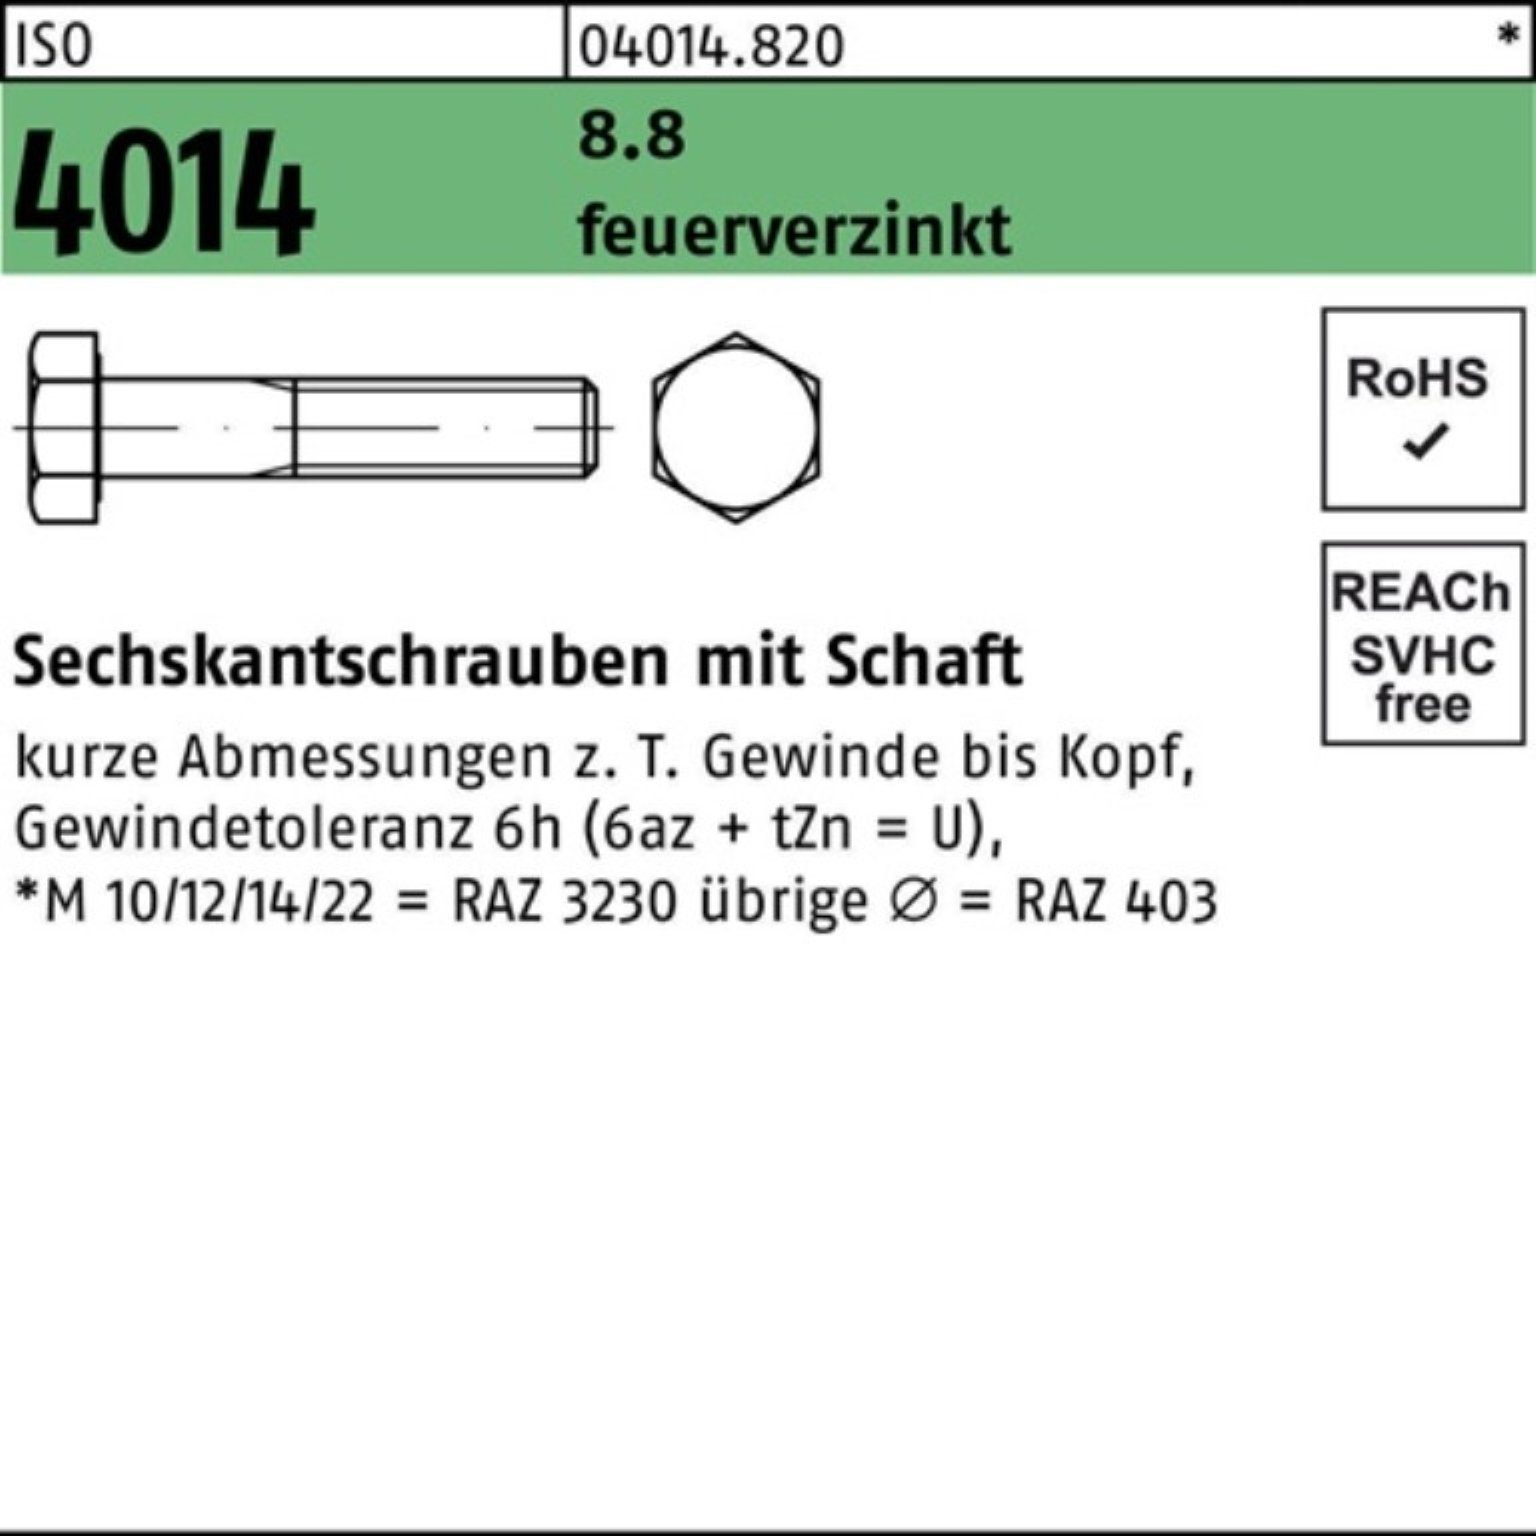 Bufab Sechskantschraube 100er Pack Sechskantschraube ISO 4014 Schaft M16x 150 8.8 feuerverz. 2